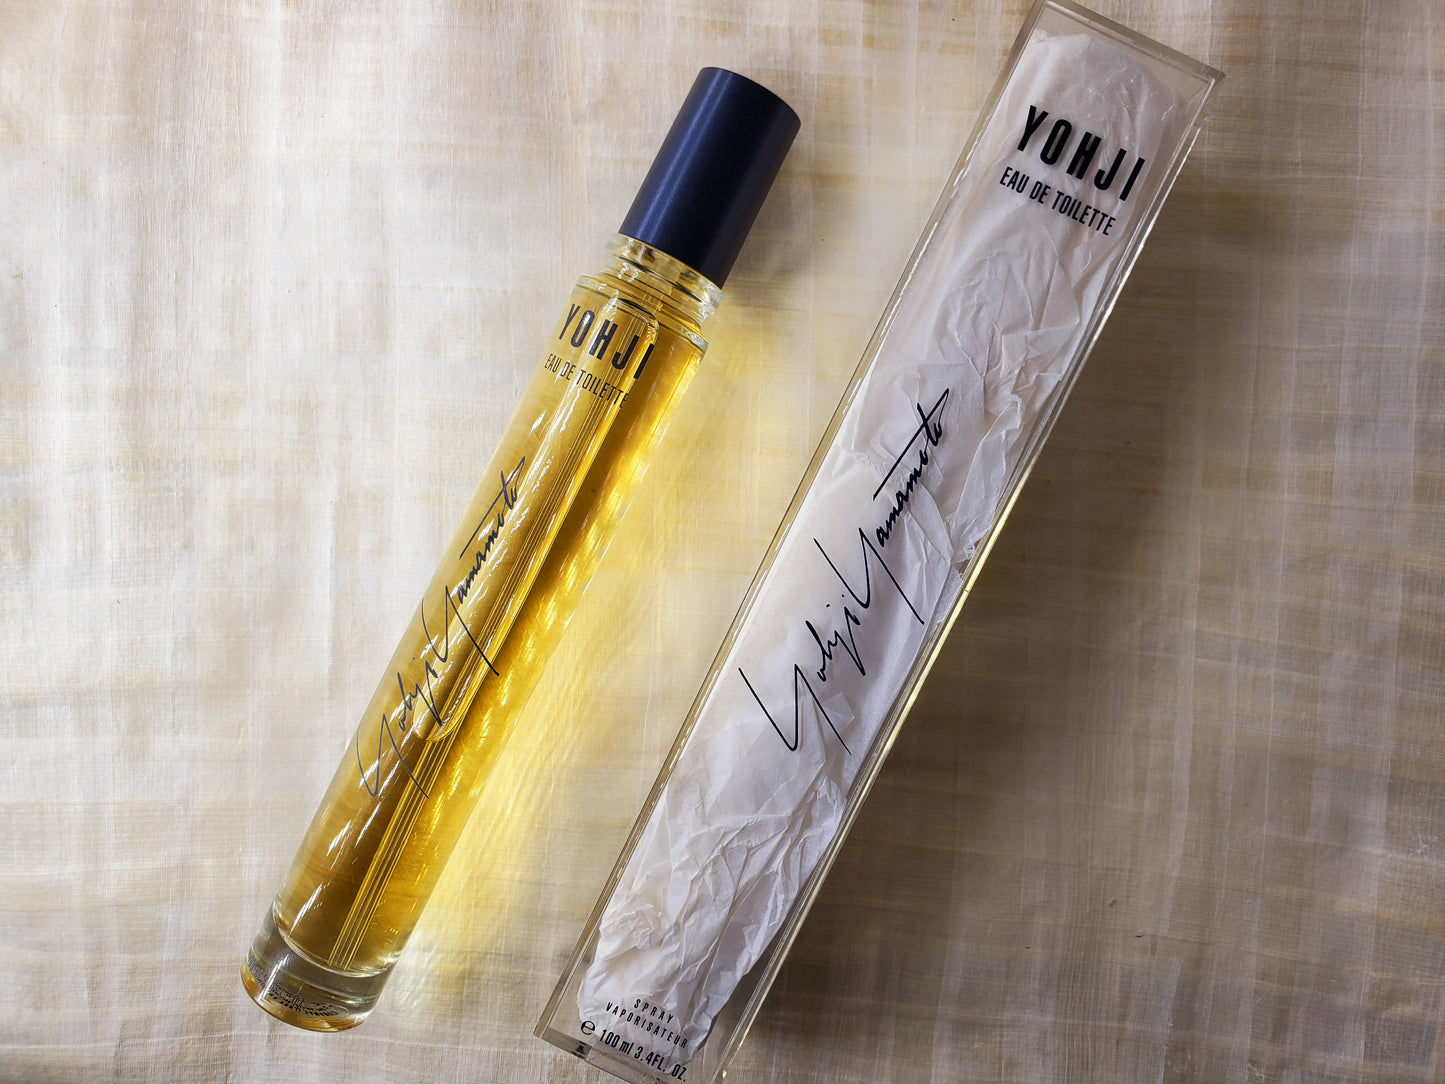 Yohji Yamamoto for women EDT Spray 100 ml 3.4 oz OR 50 ml 1.7 oz, Vintage, Rare, Sealed